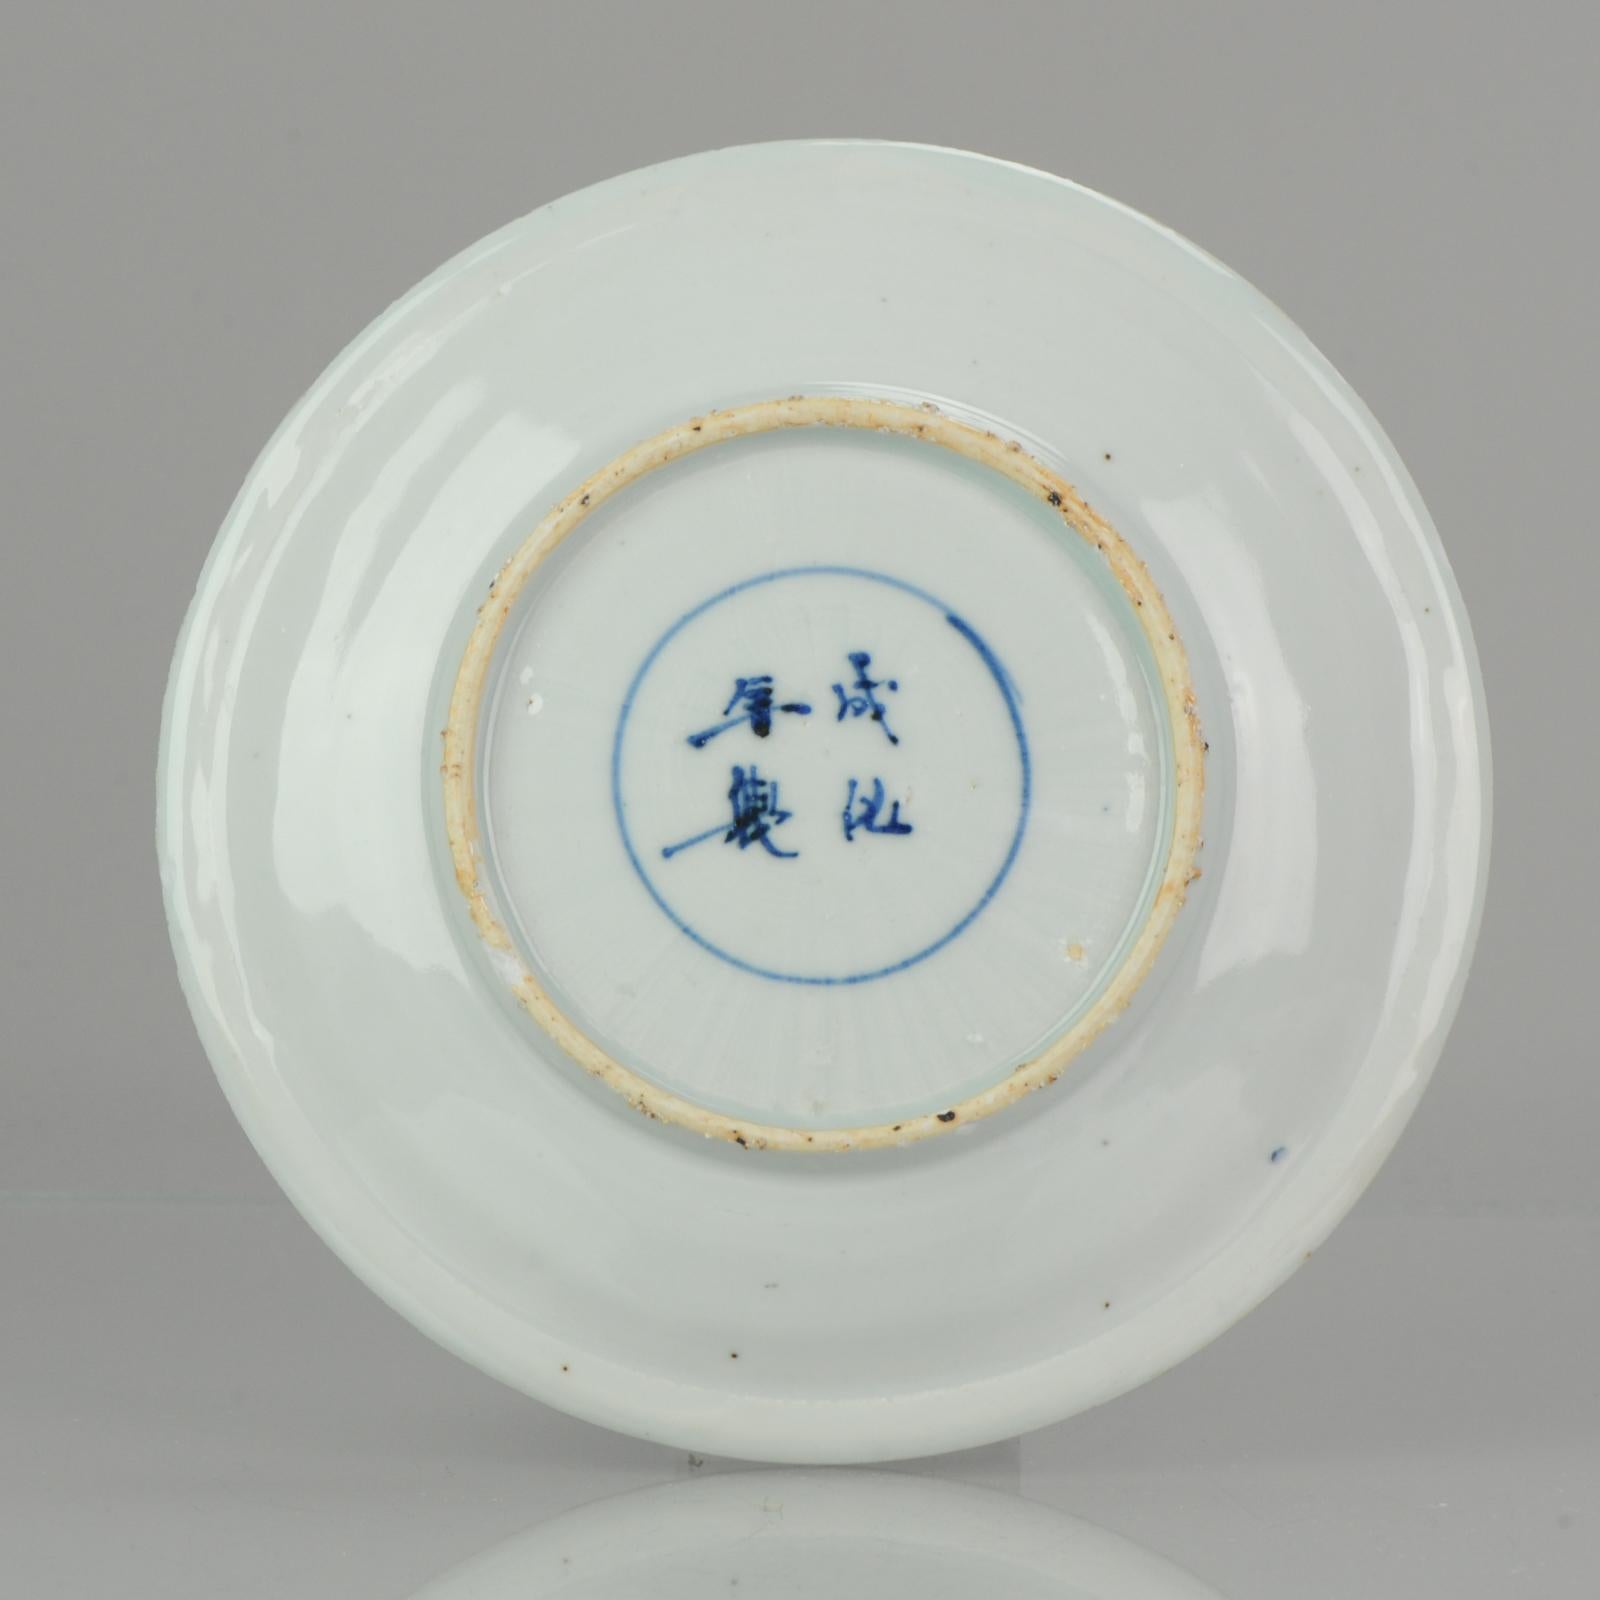 ancient china plates